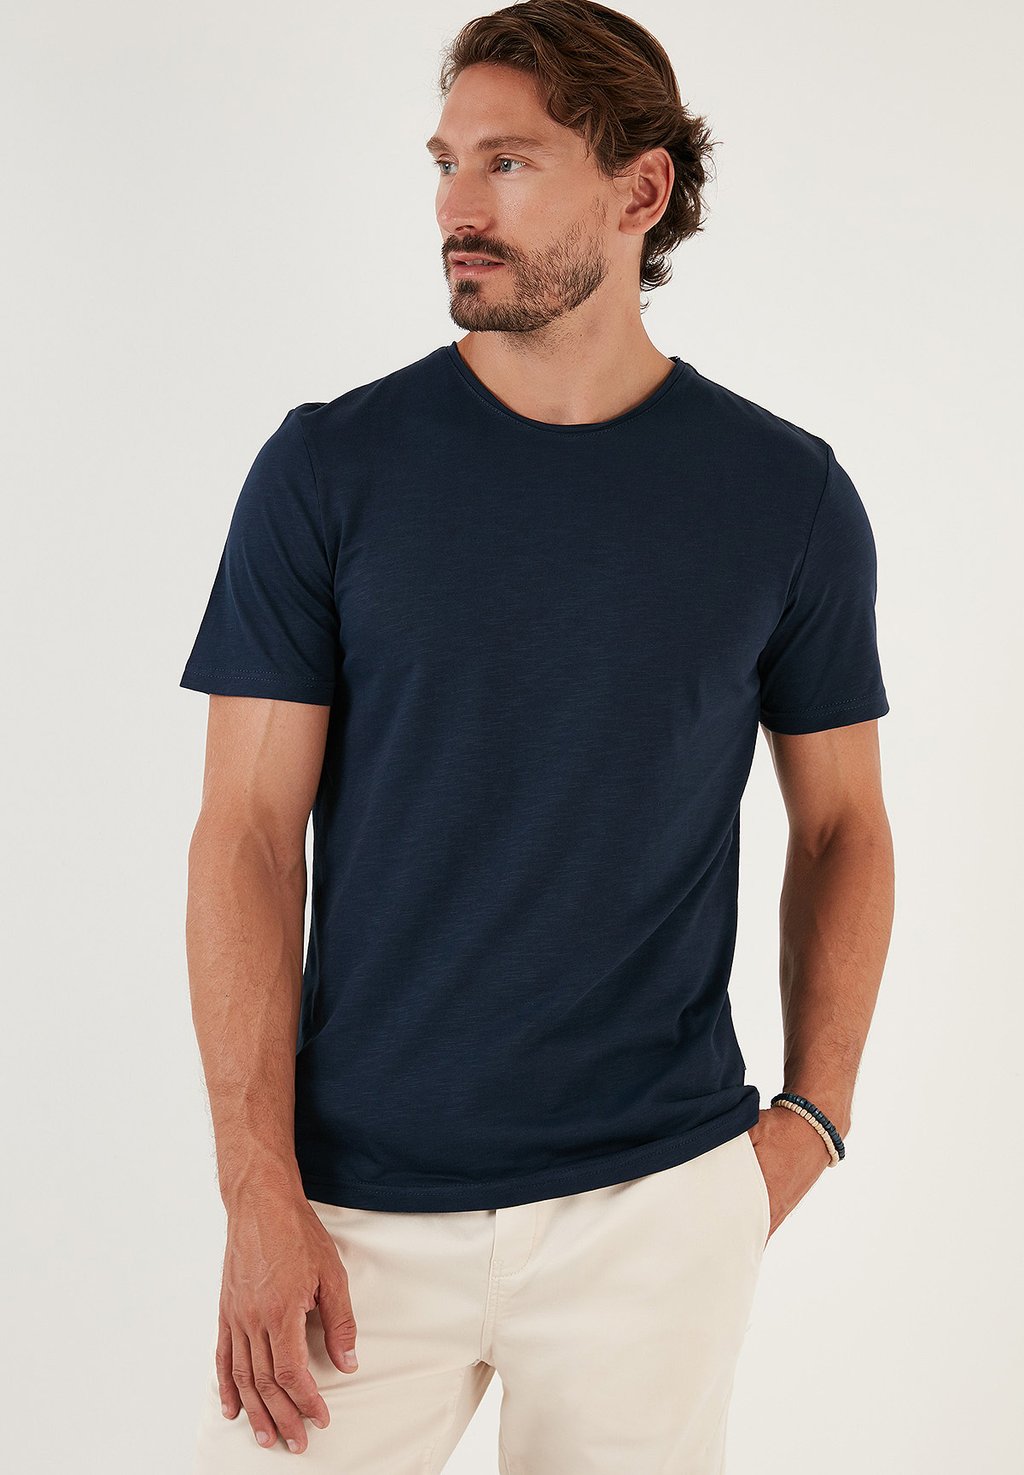 Базовая футболка SLIM FIT Buratti, Королевский синий базовая футболка buratti светло синий